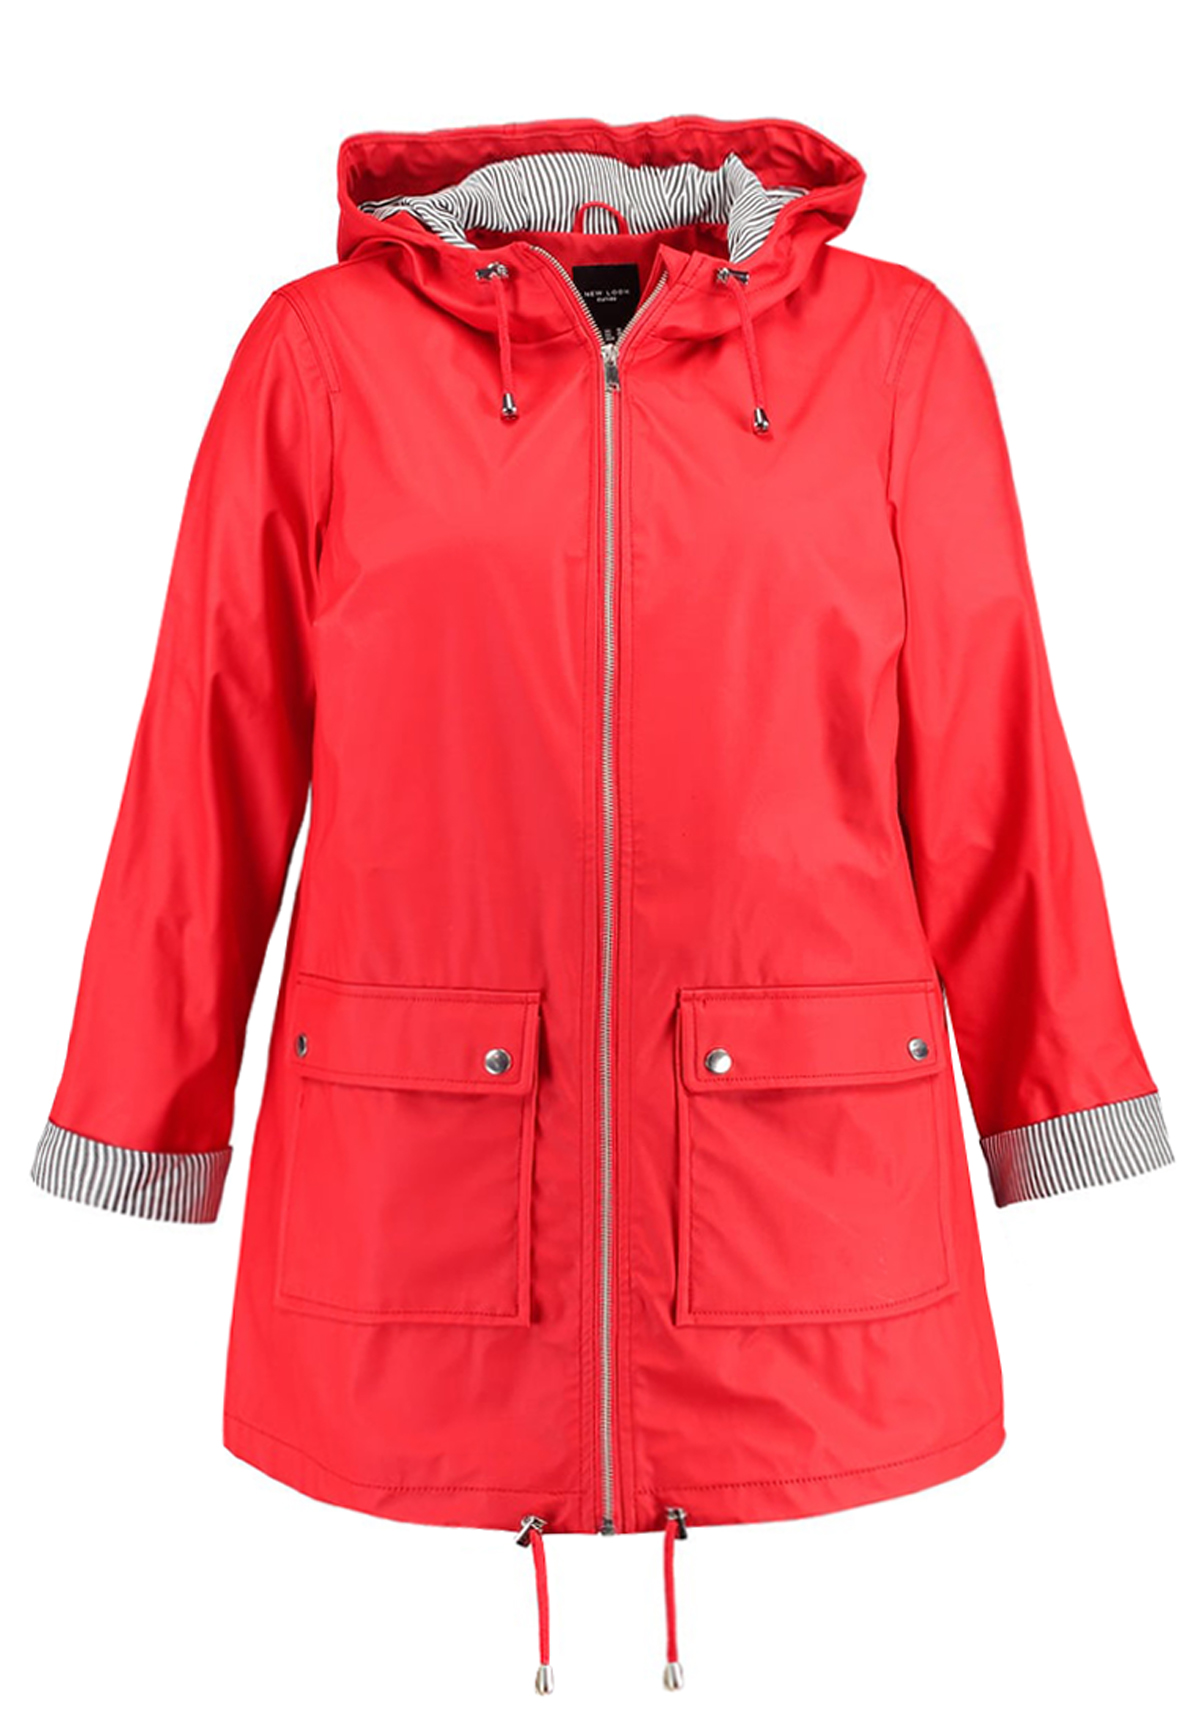 size 26 waterproof jacket